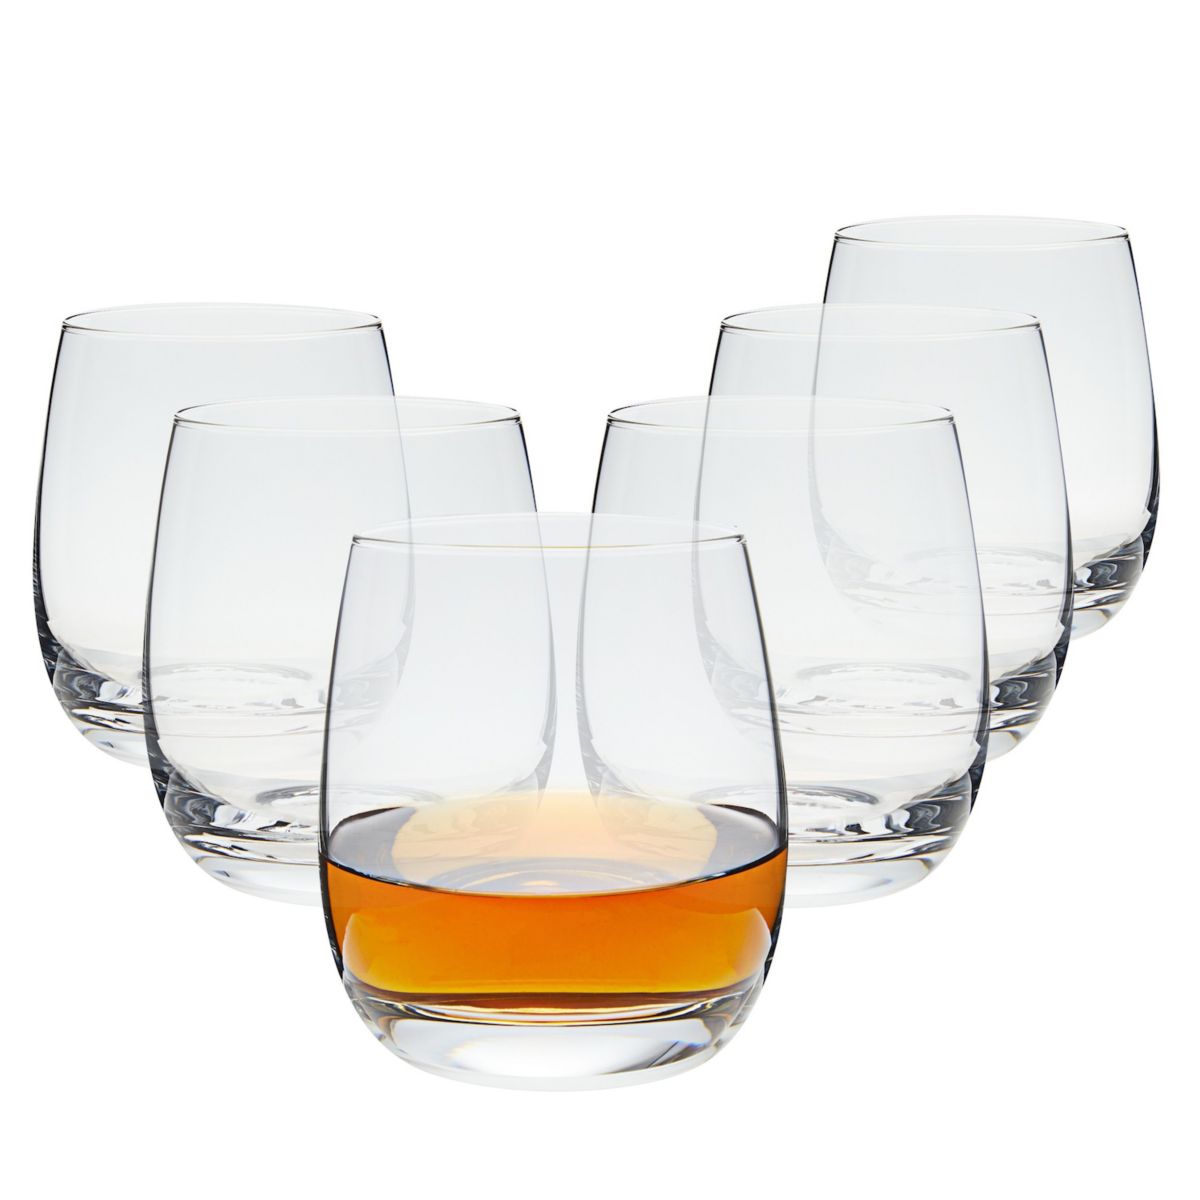 Бокалы для виски на 12 унций, двойные старомодные стаканы для скотча, бурбона и коктейлей (набор из 6 шт.) Juvale